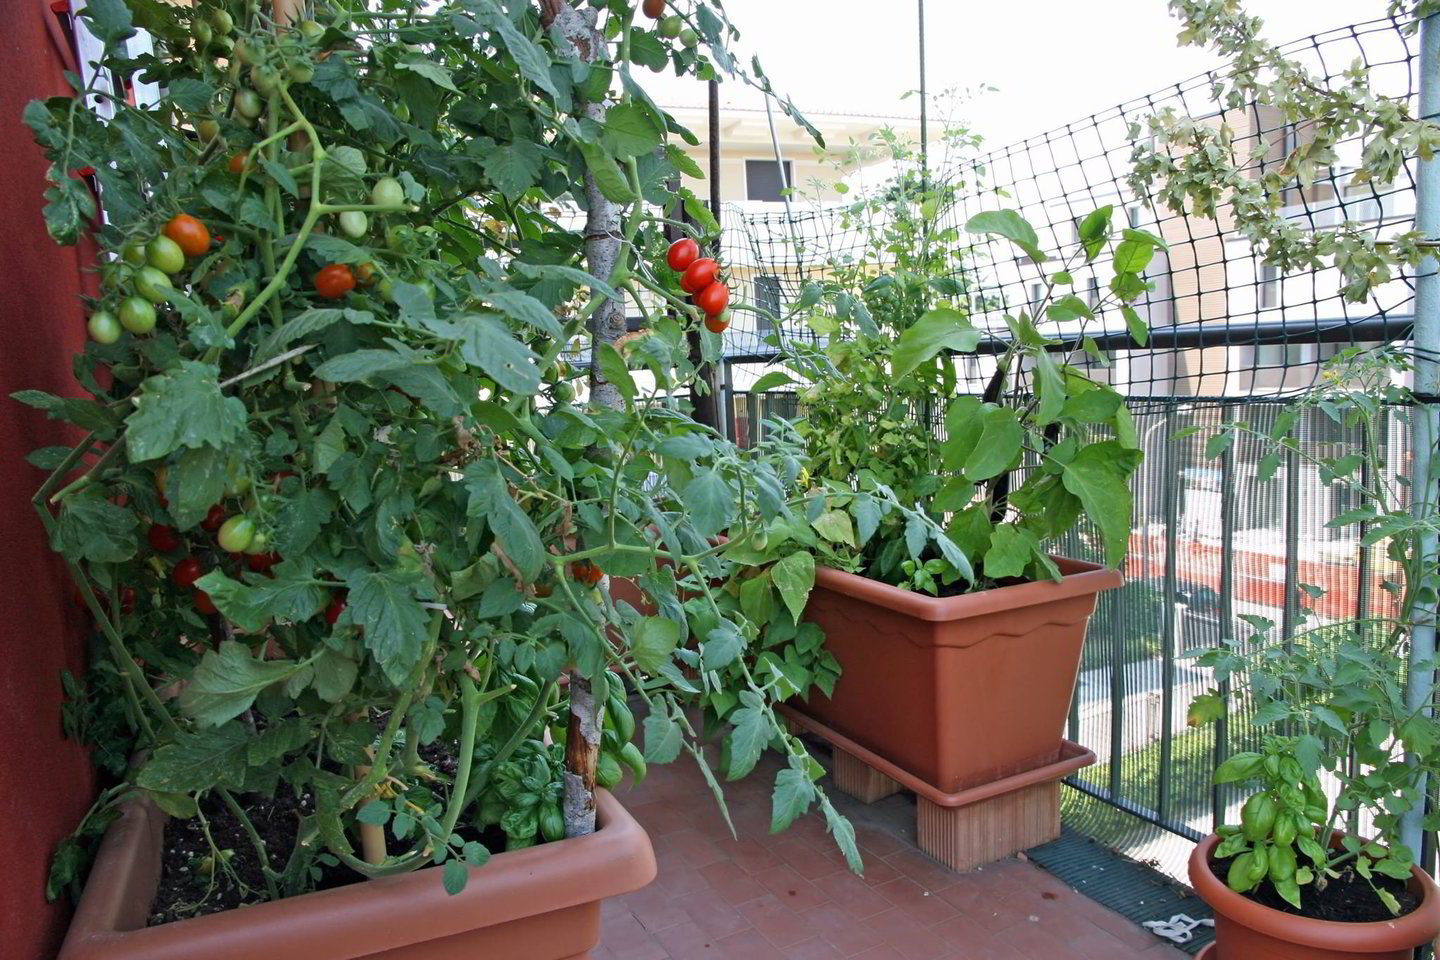  Namuose susiruošus auginti daržoves ar prieskonius, reikėtų pasirūpinti sėklomis ar daigais, substratu, drenažu, loveliais, vazonais ir trąšomis.<br> Shutterstock nuotr.